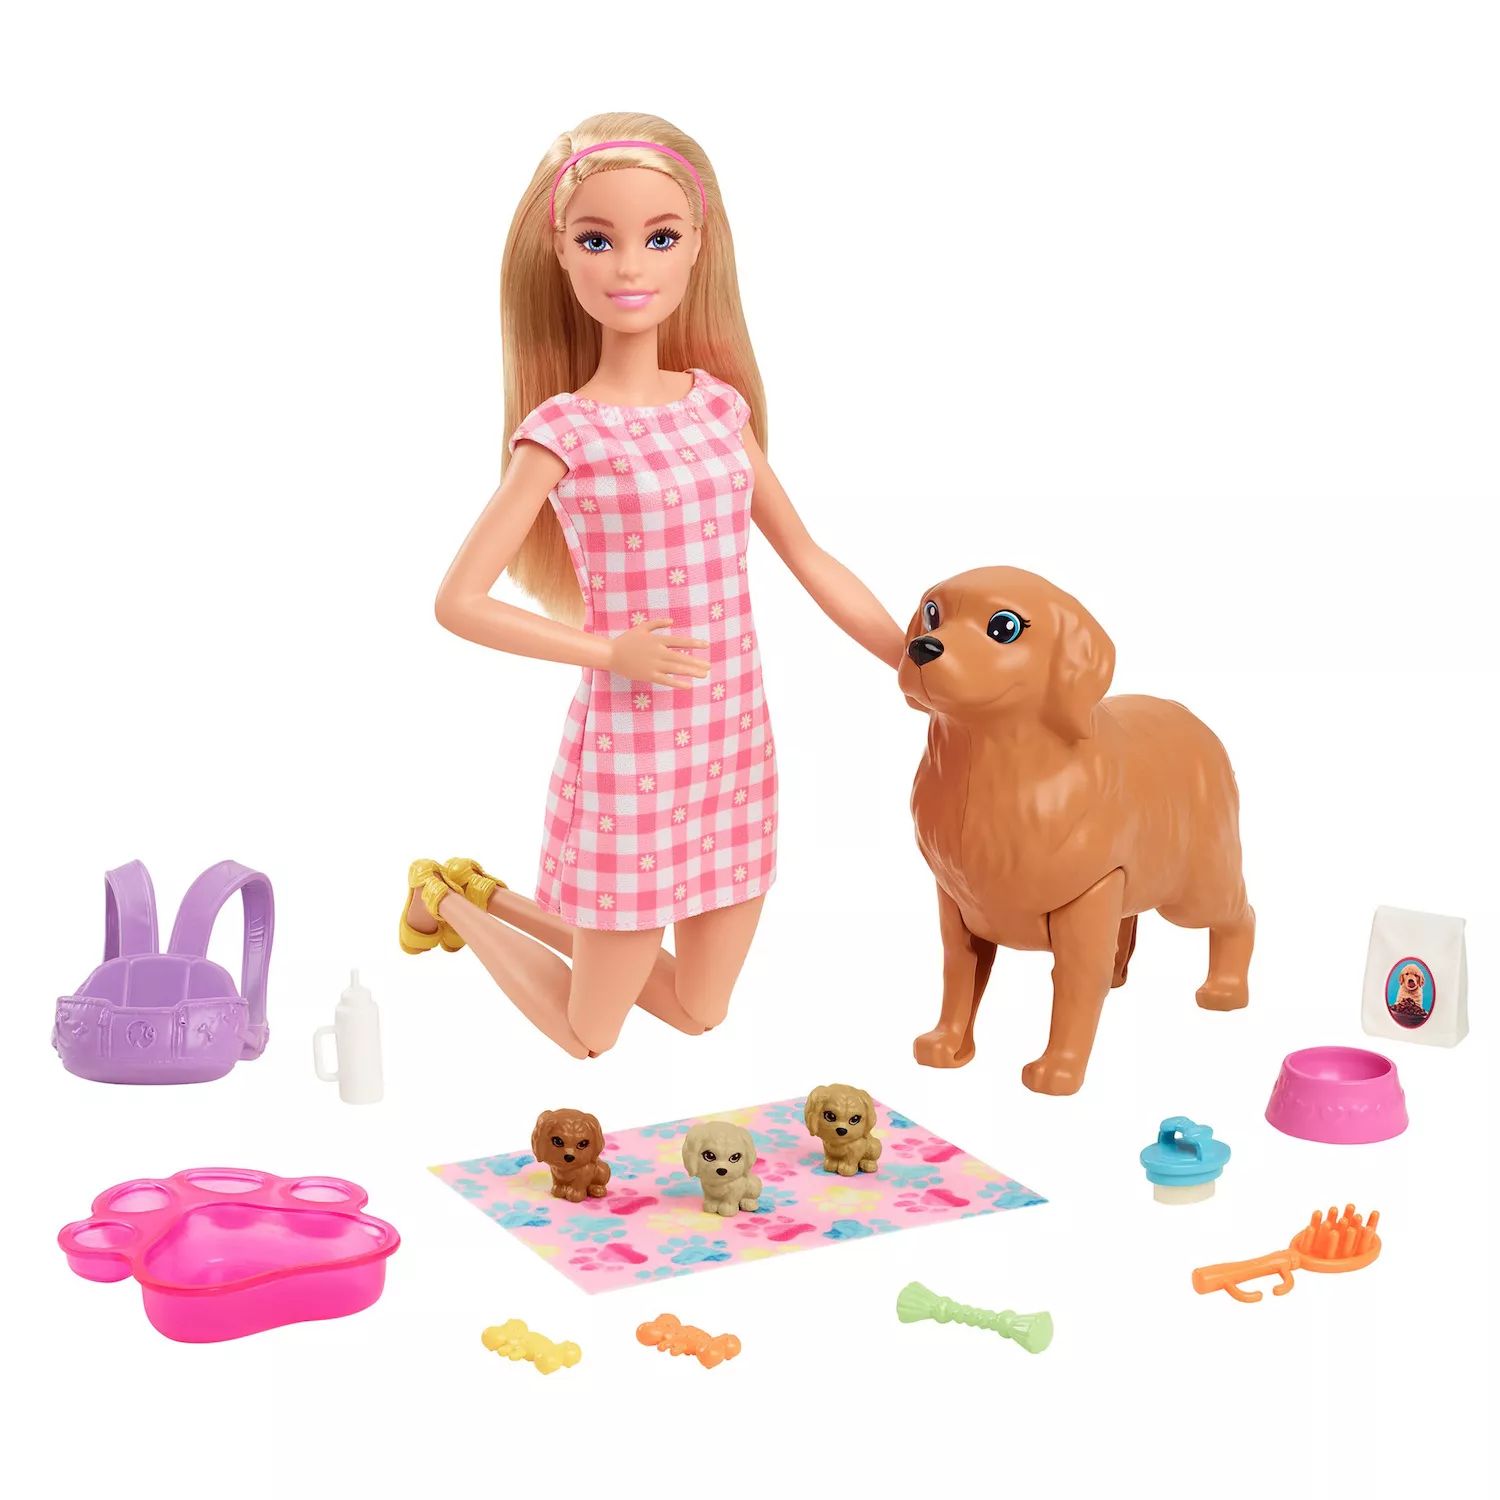 Игровой набор Barbie Doll Newborn Pups с куклой блондинкой, мамой-собакой и тремя щенками, детские игрушки Barbie